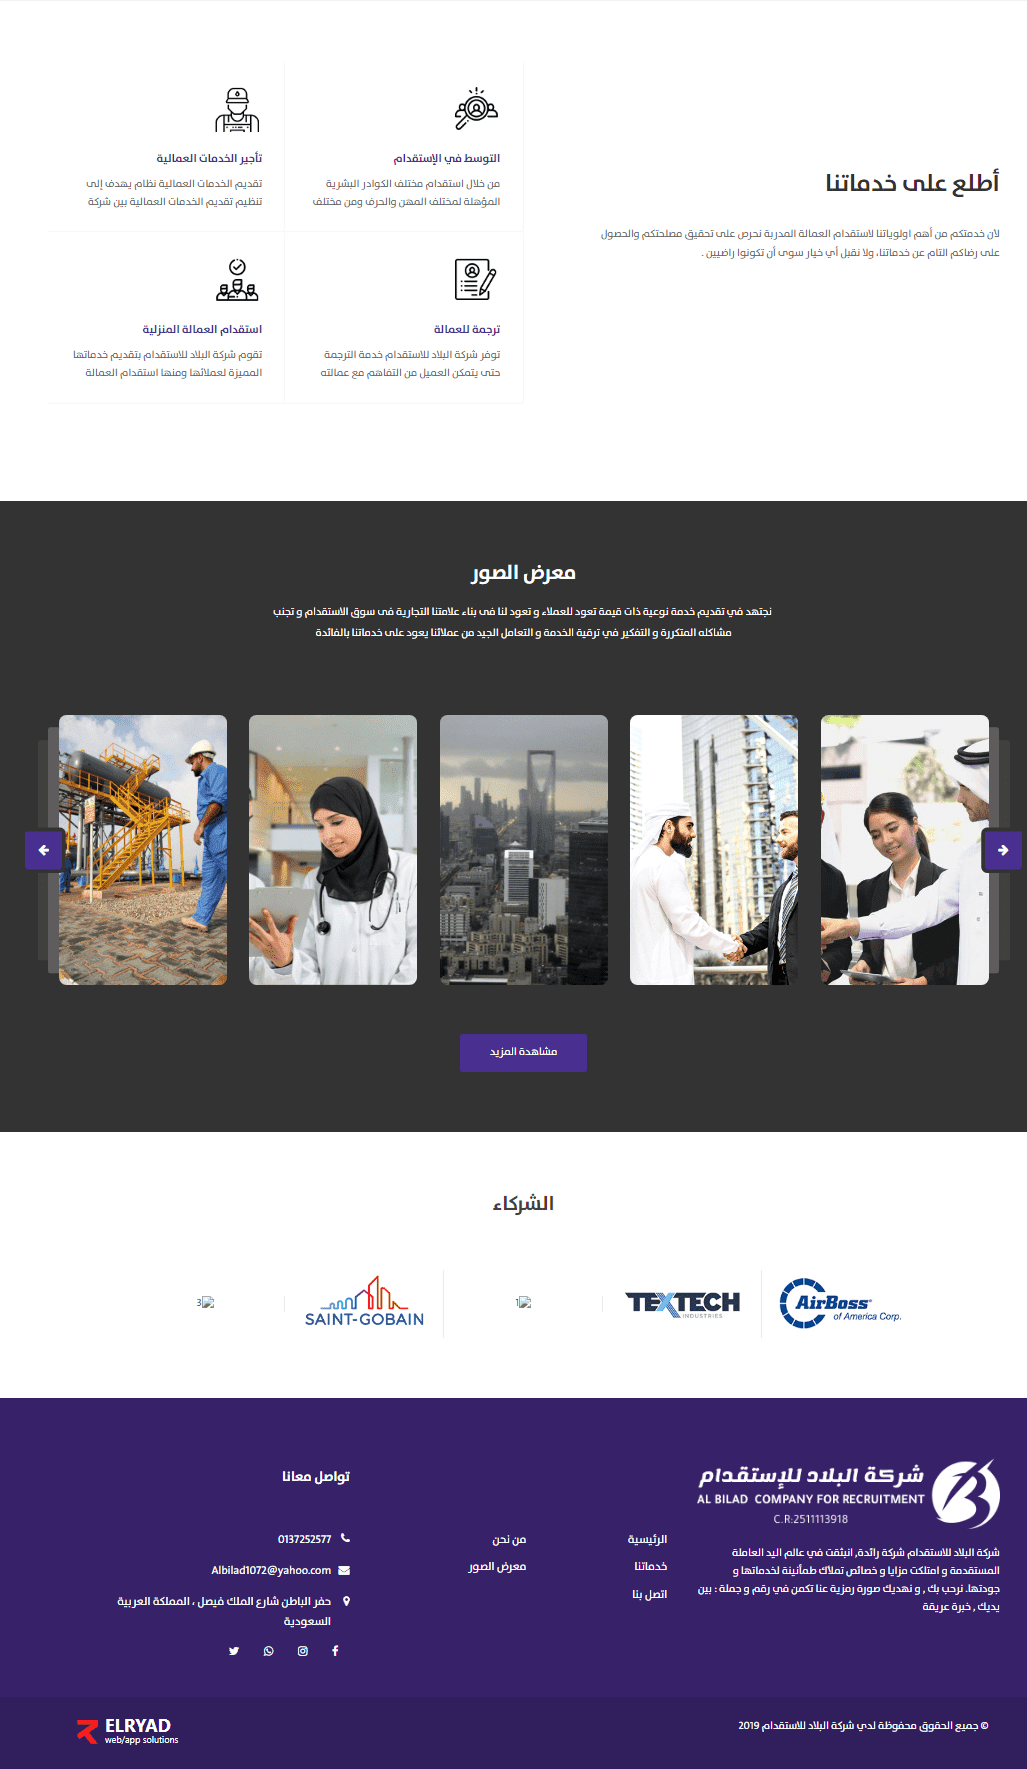 إنشاء موقع للعمالة والإستقدام - موقع شركة البلاد للإستقدام بالمملكة السعودية